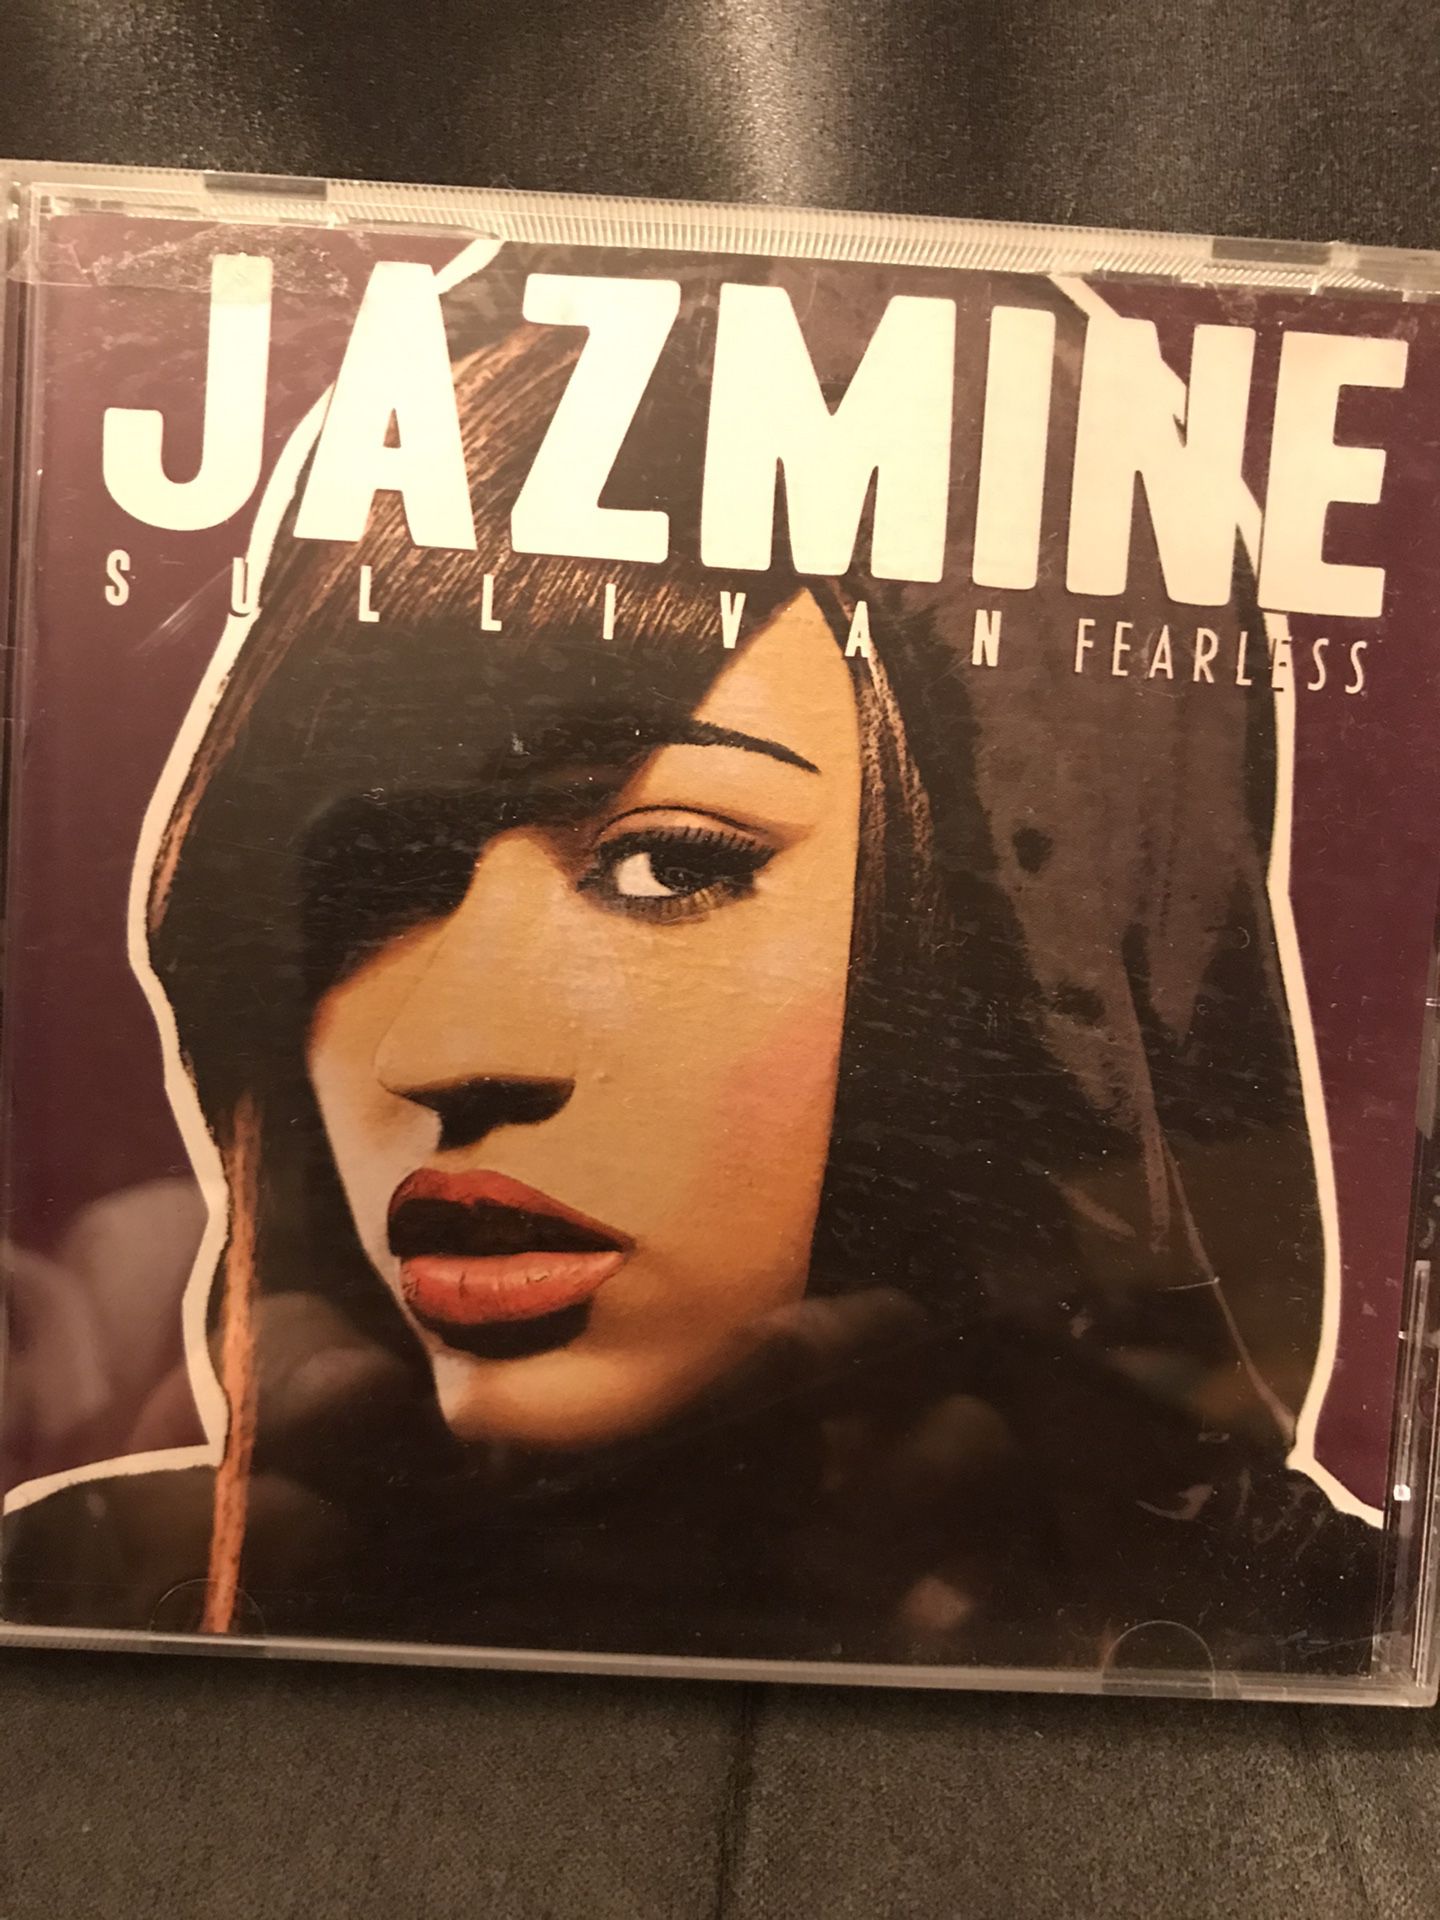 !! Jazmine Sullivan “Fearless” Music CD